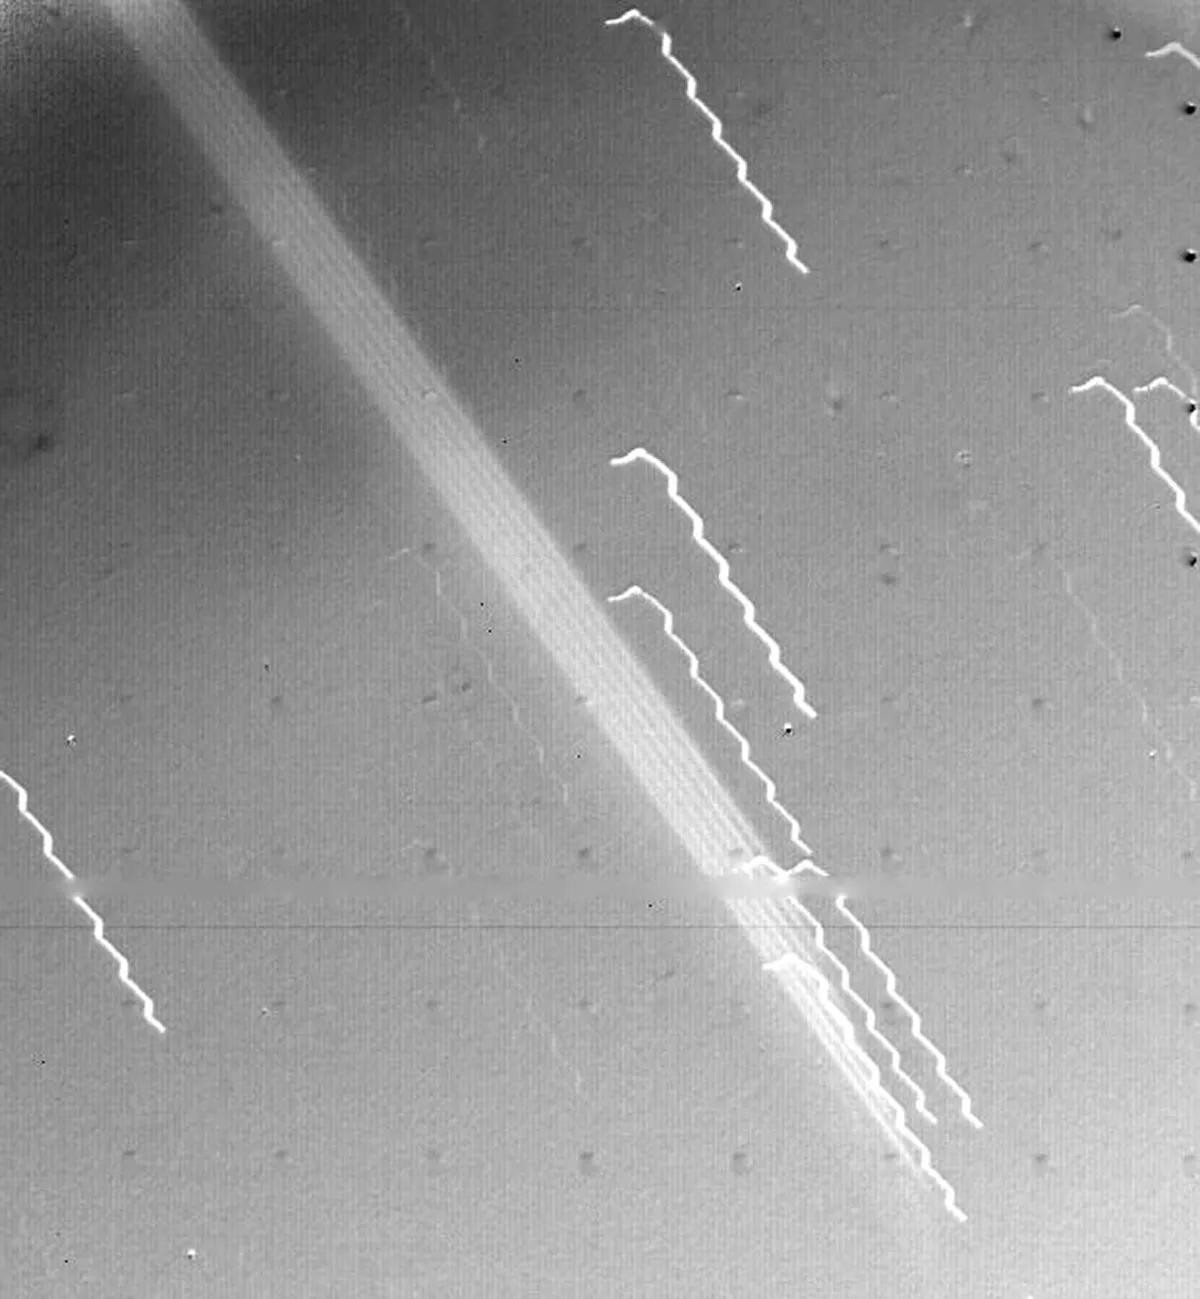 La large bande de lumière traversant en diagonale le centre de cette image est la première preuve des anneaux de Jupiter, vus par le vaisseau spatial Voyager 1 le 4 mars 1979. Le bord de l'anneau était à 1 212 000 km du vaisseau spatial et à 57 000 km du nuage visible à la surface de Jupiter.  Les lignes bancales sont des étoiles d’arrière-plan dont l’apparence est affectée par le mouvement du vaisseau spatial.  Crédit : NASA/JPL